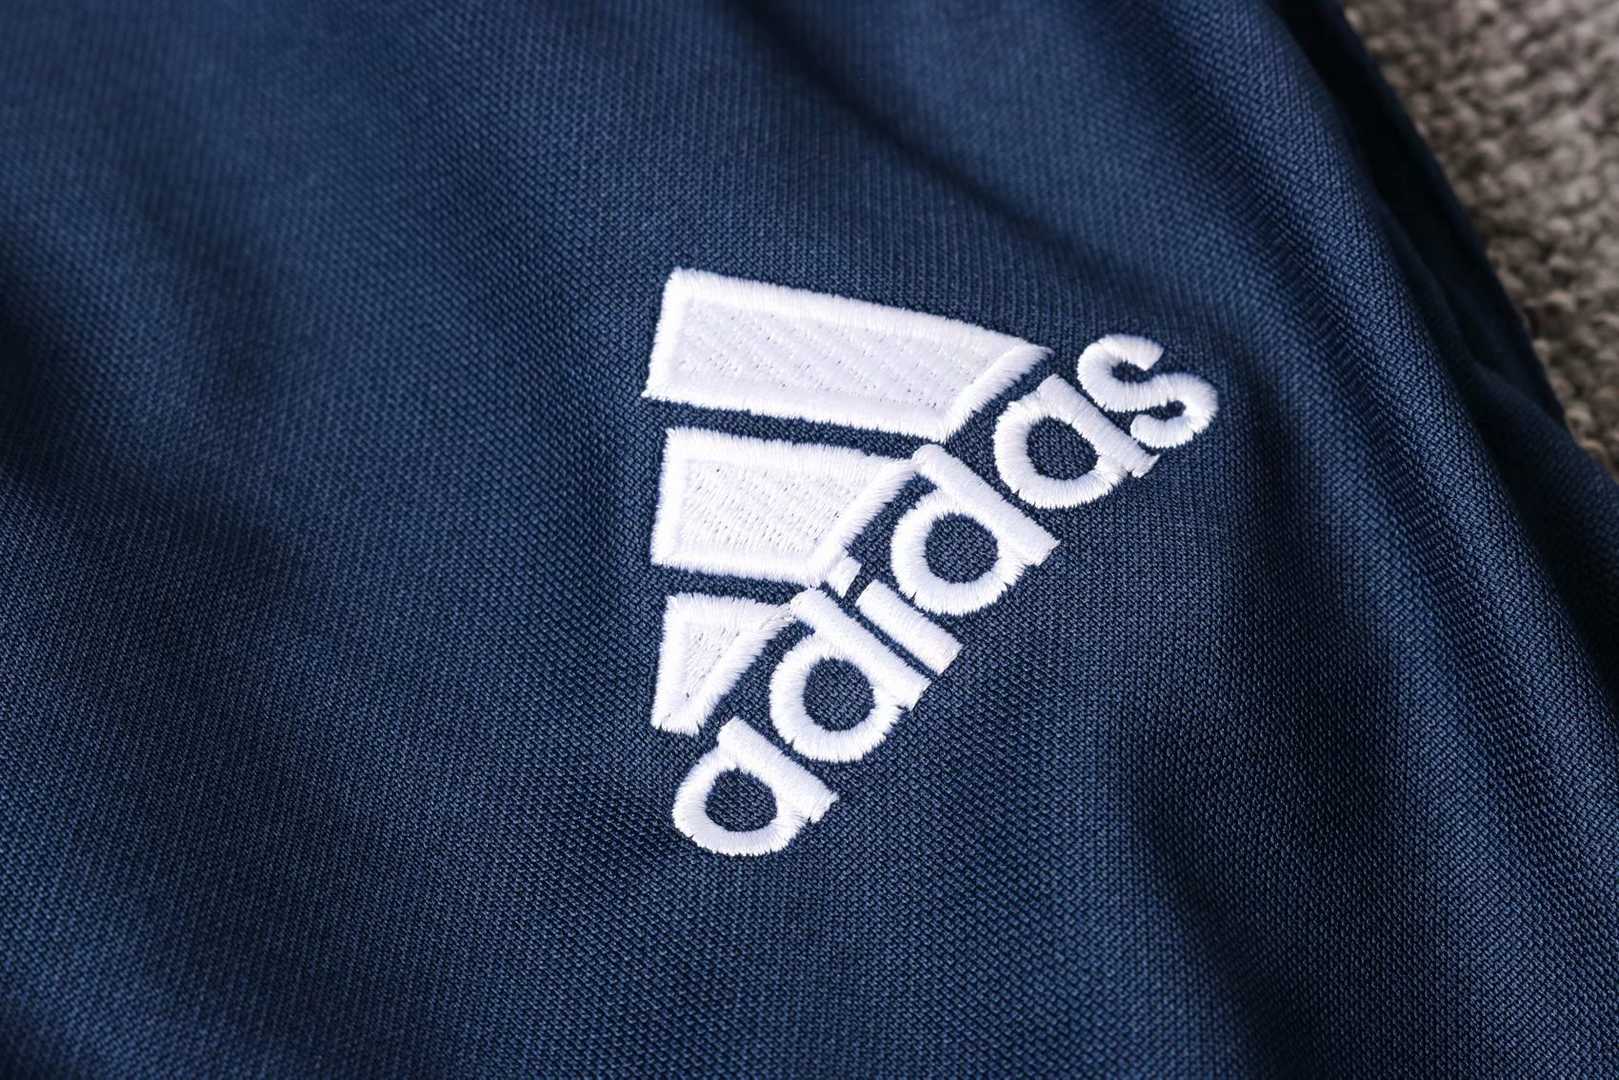 2020/21 Cruzeiro Blue Half Zip Mens Soccer Training Suit(SweatJersey + Pants)